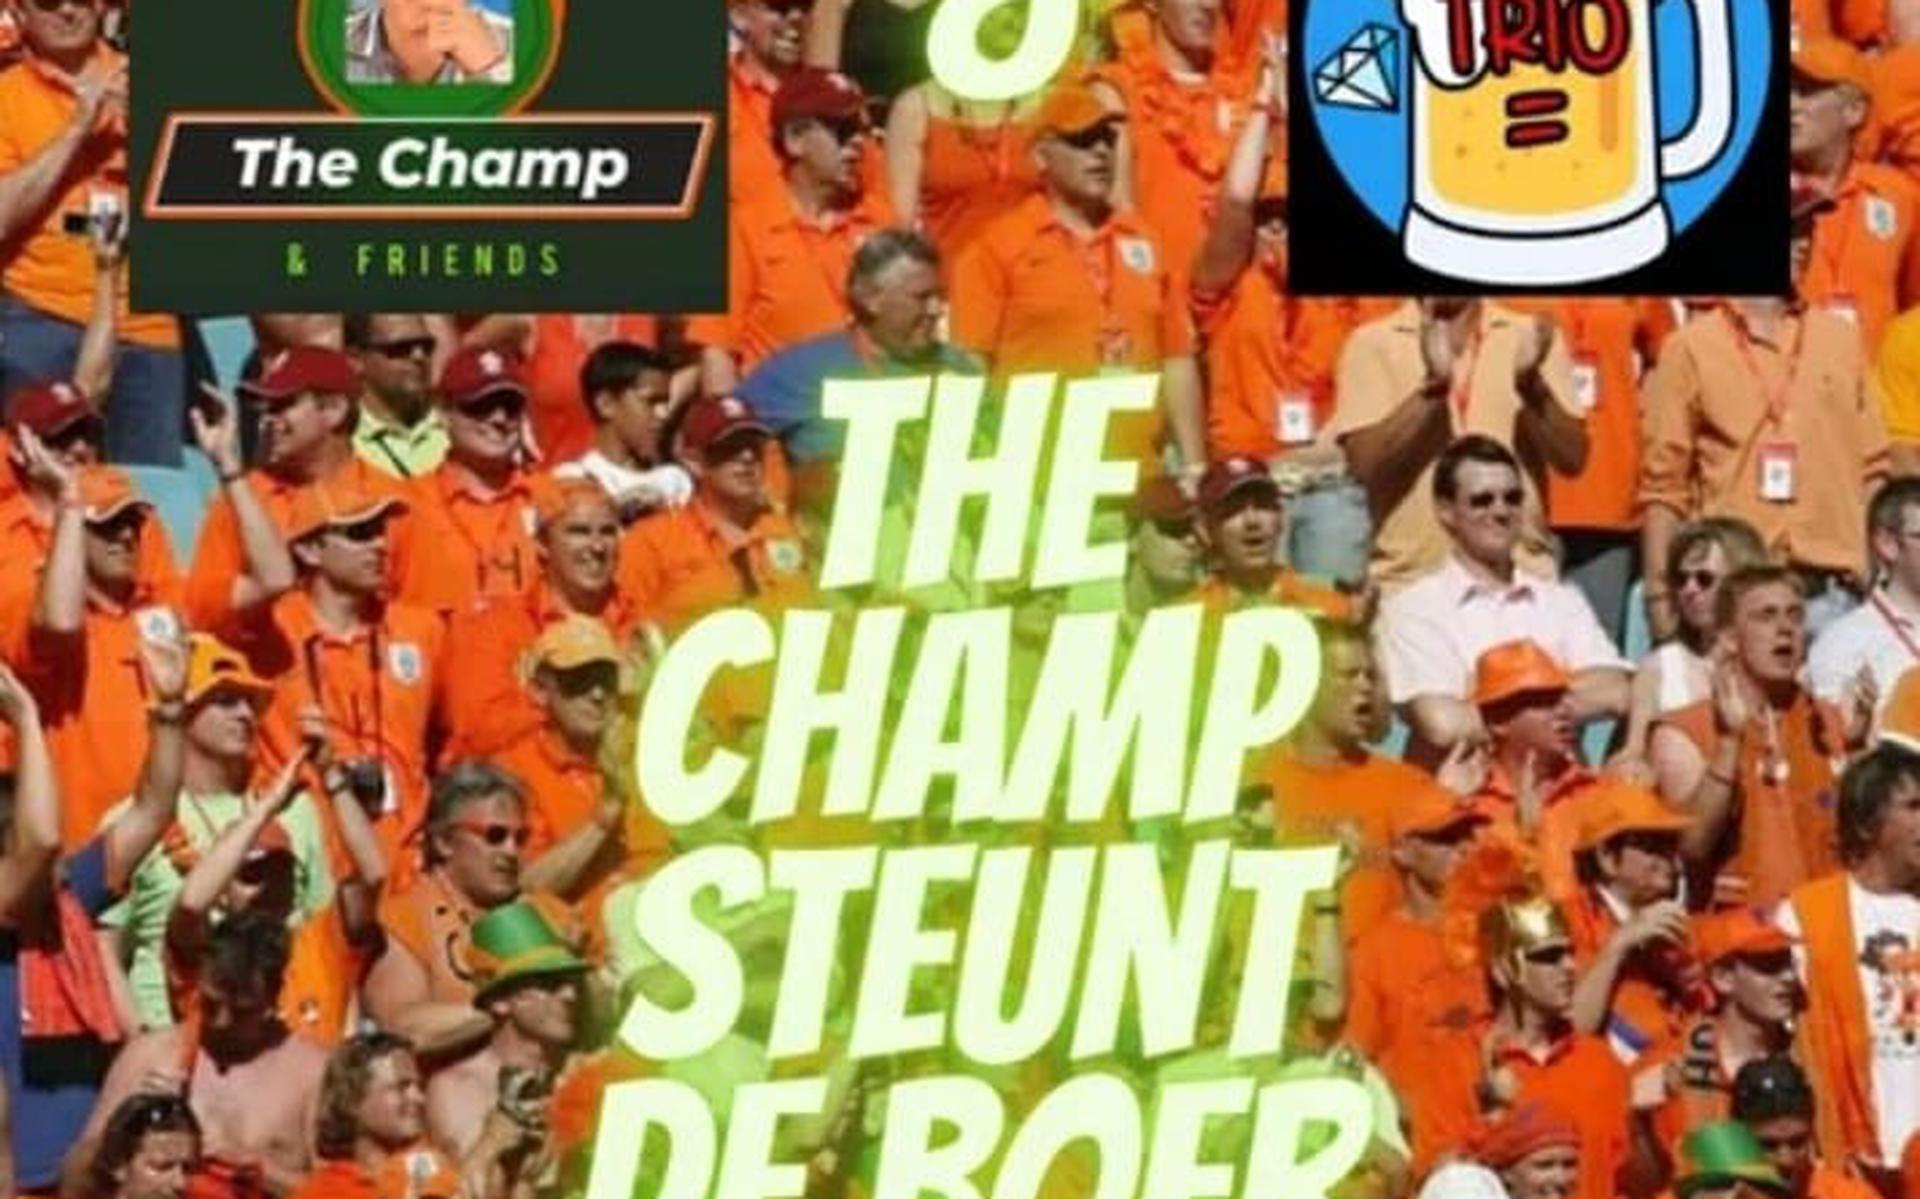 The Champ steunt De Boer!